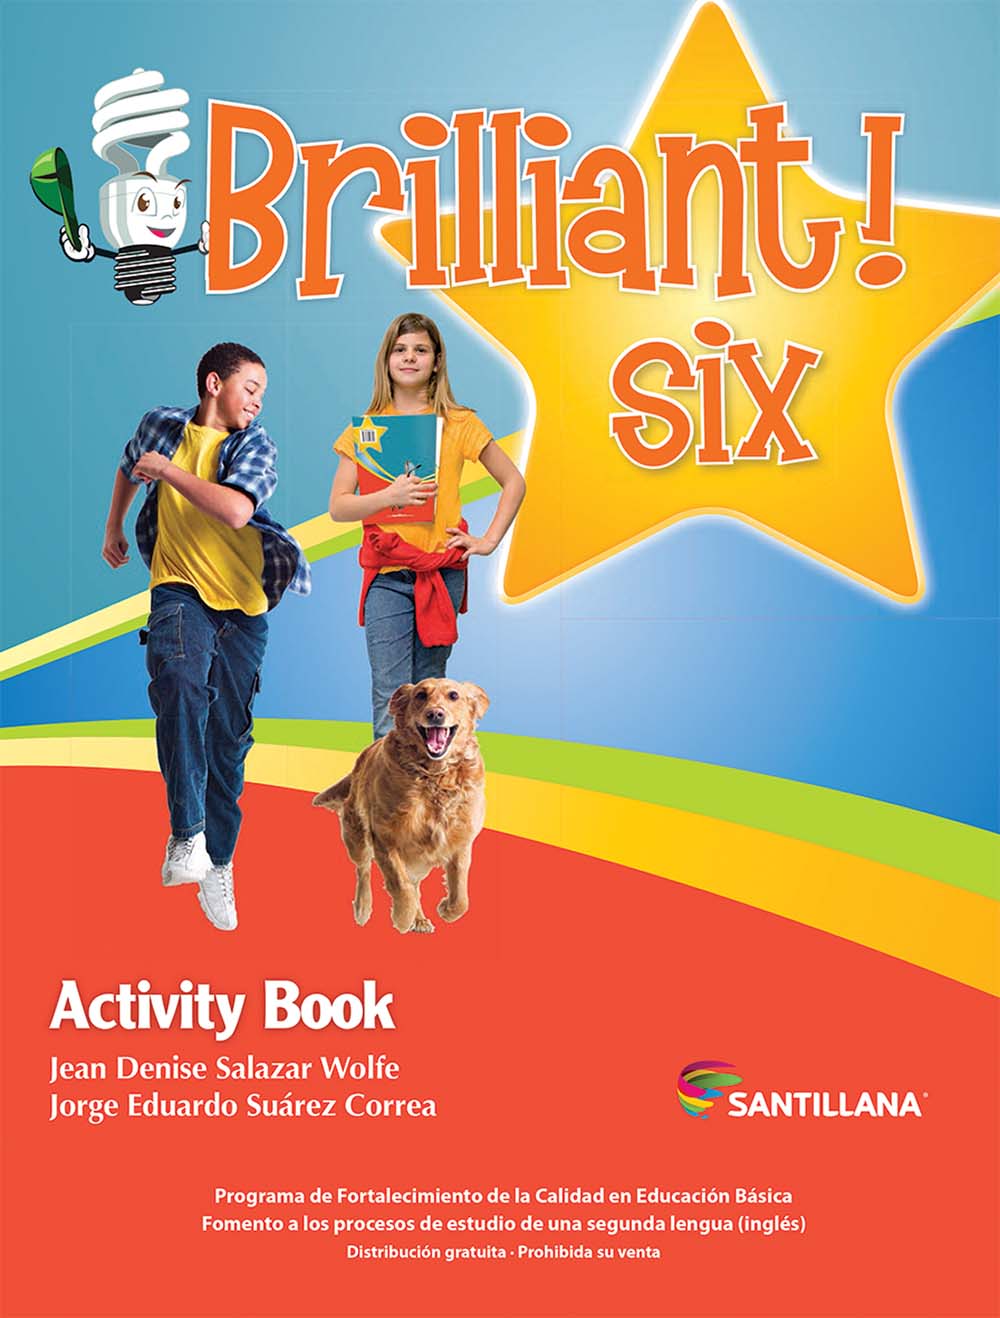 Brilliant! Six Cuaderno de Actividades, Editorial: Santillana, Nivel: Primaria, Grado: 6